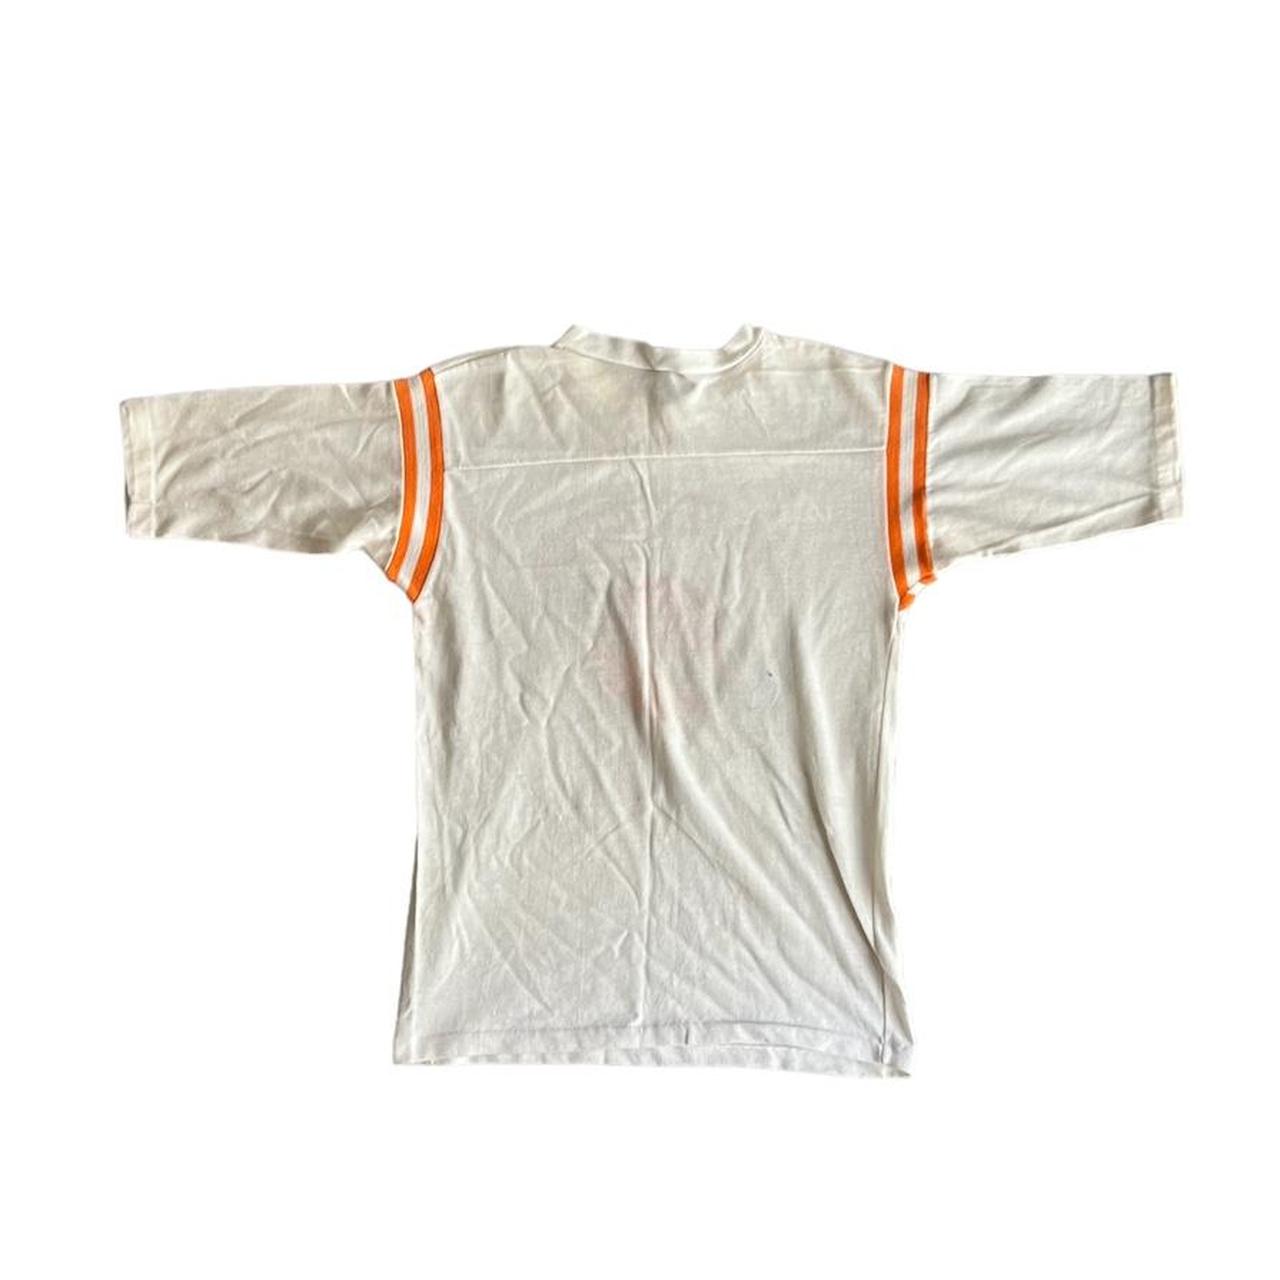 Artek Men's White and Orange T-shirt (2)